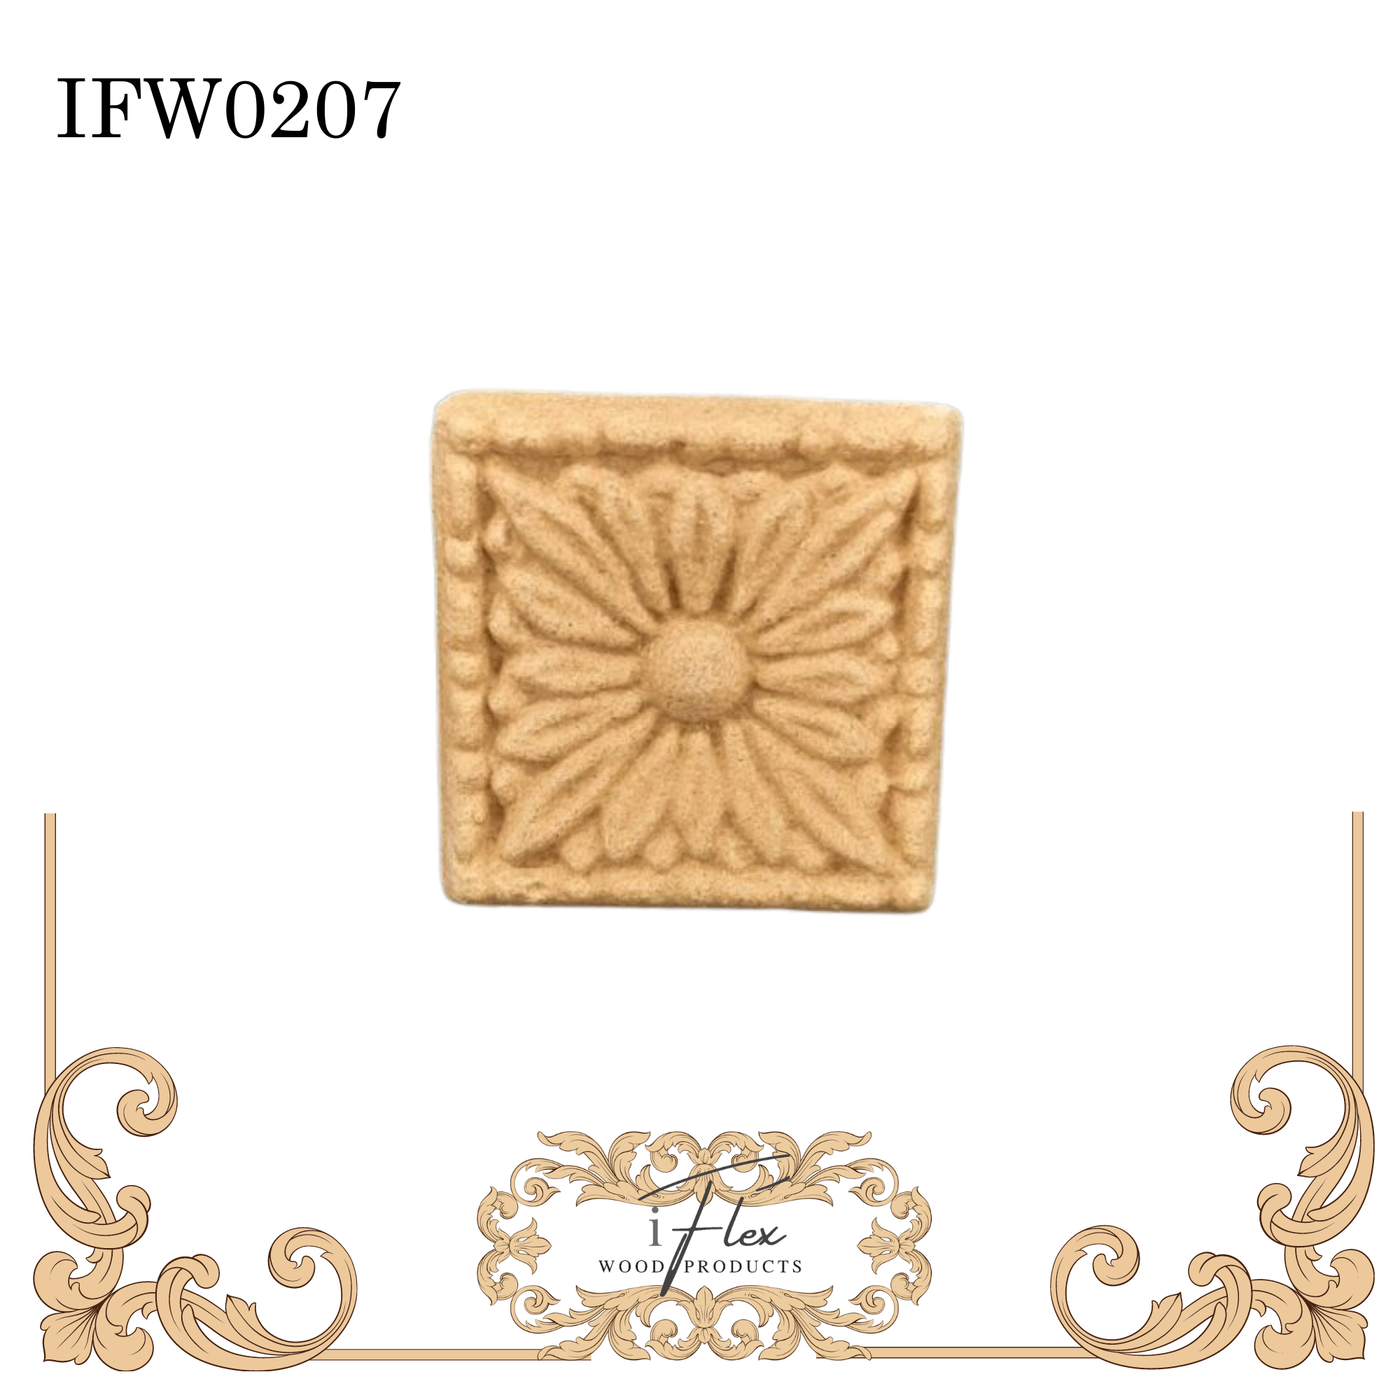 IFW 0207